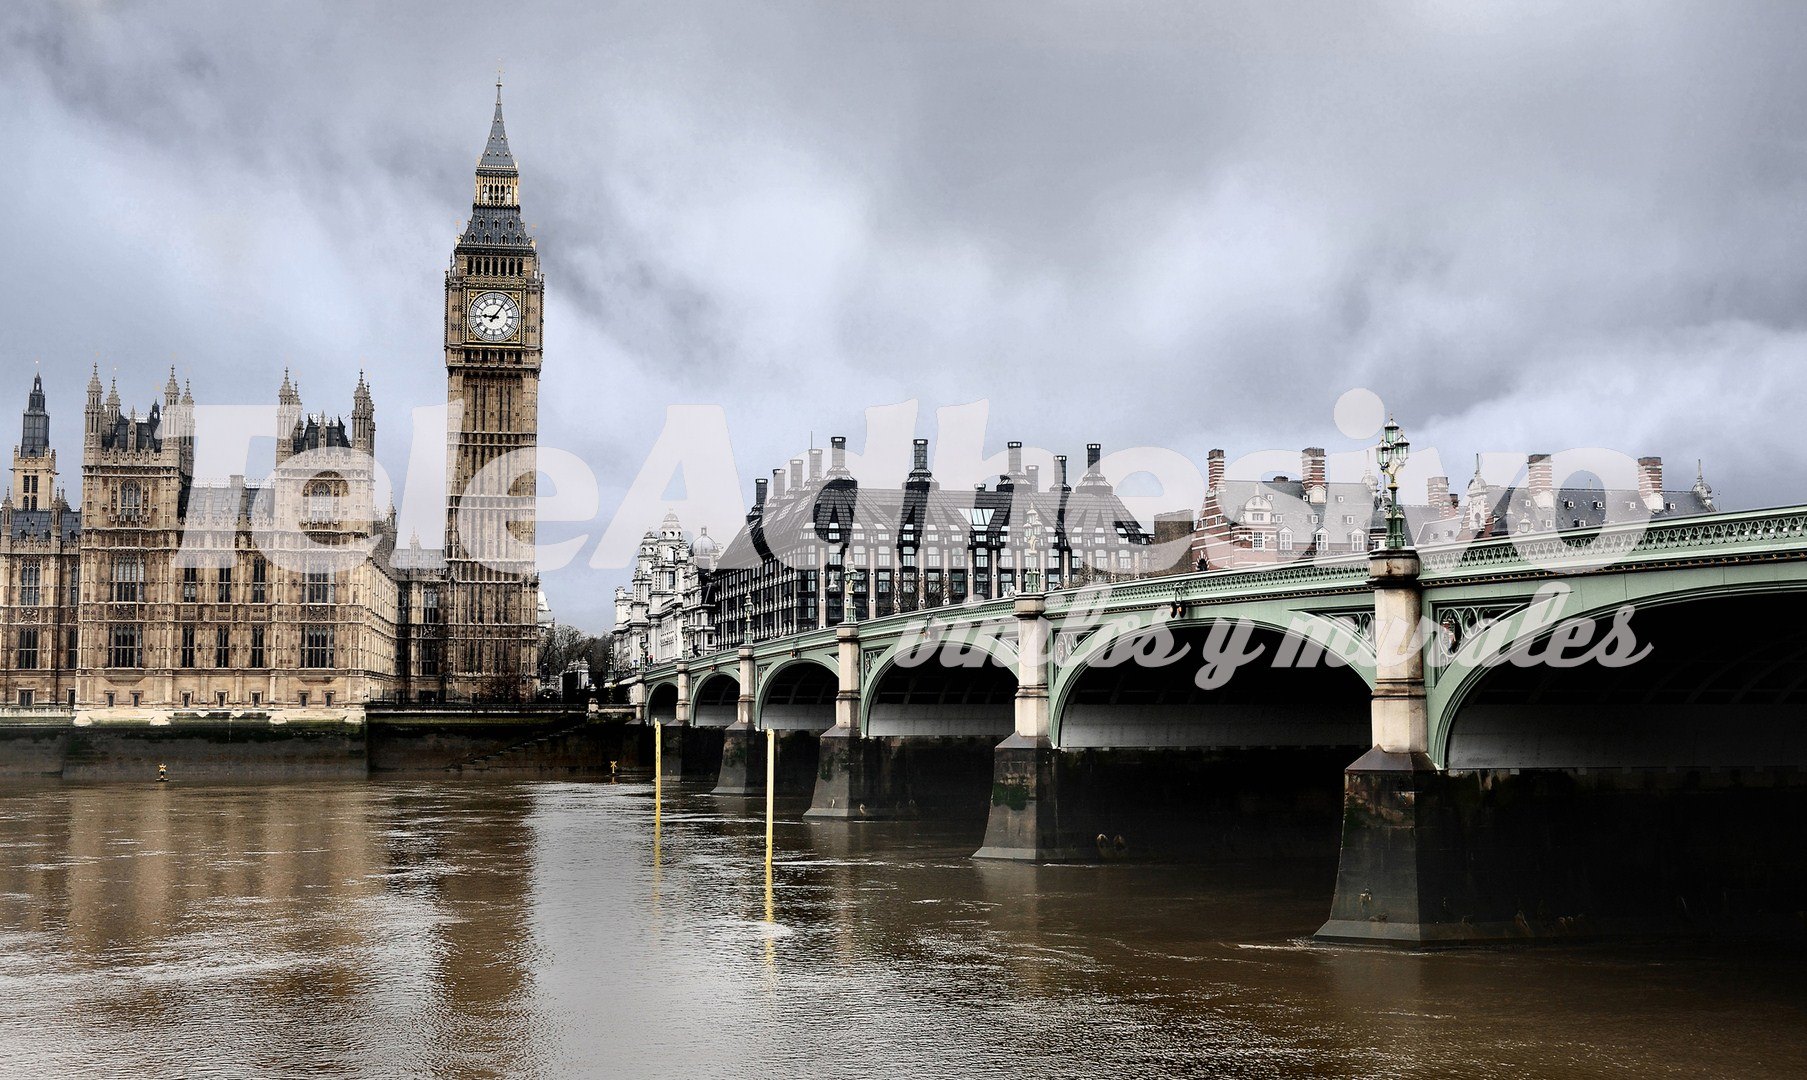 Fotomurales: Puente de Westminster